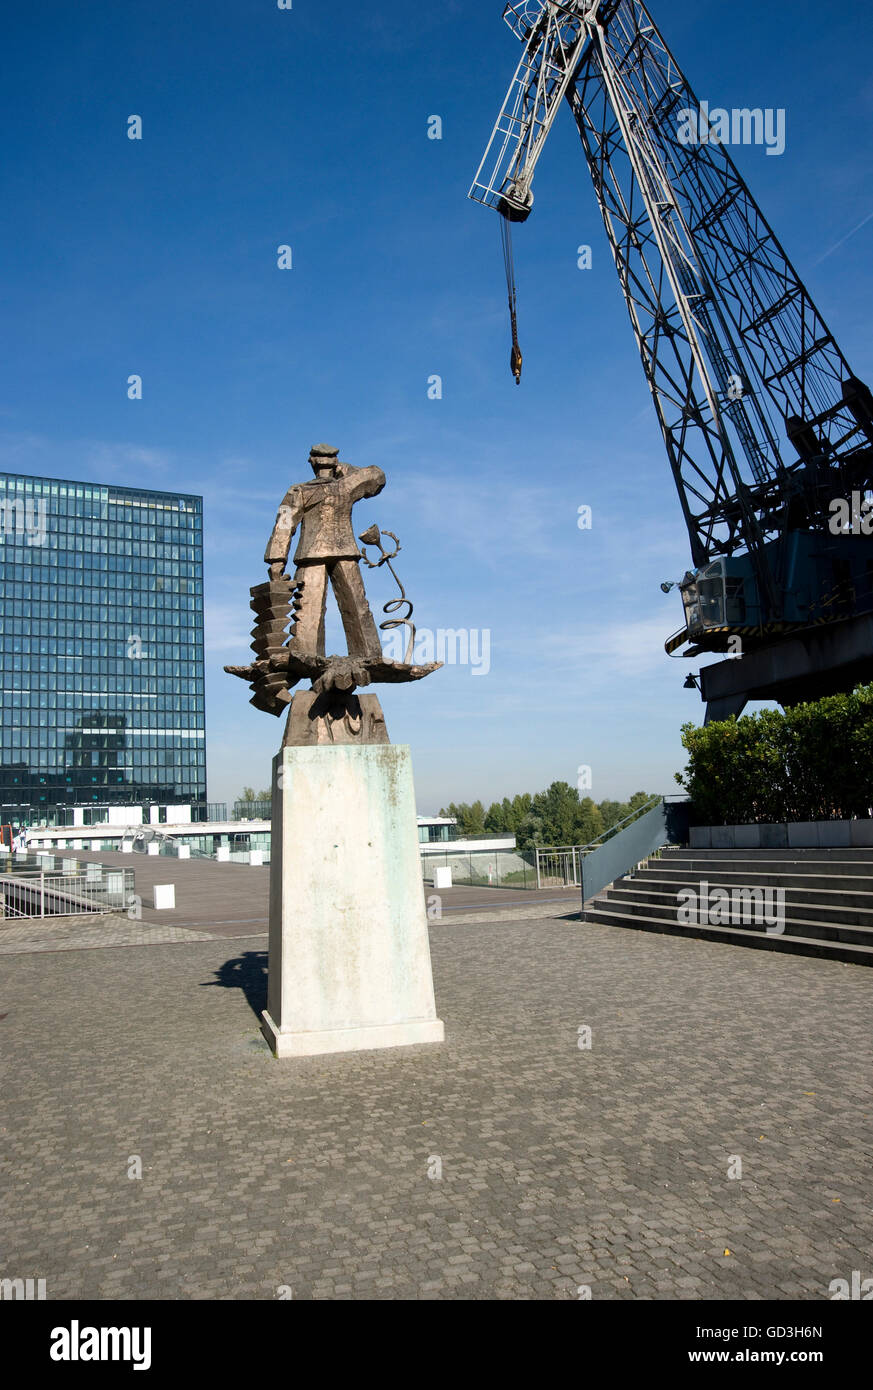 Hans Albers sculpture par Joerg Immendorf, et vieille grue dans le port des médias Medienhafen, Düsseldorf, Rhénanie du Nord-Westphalie Banque D'Images